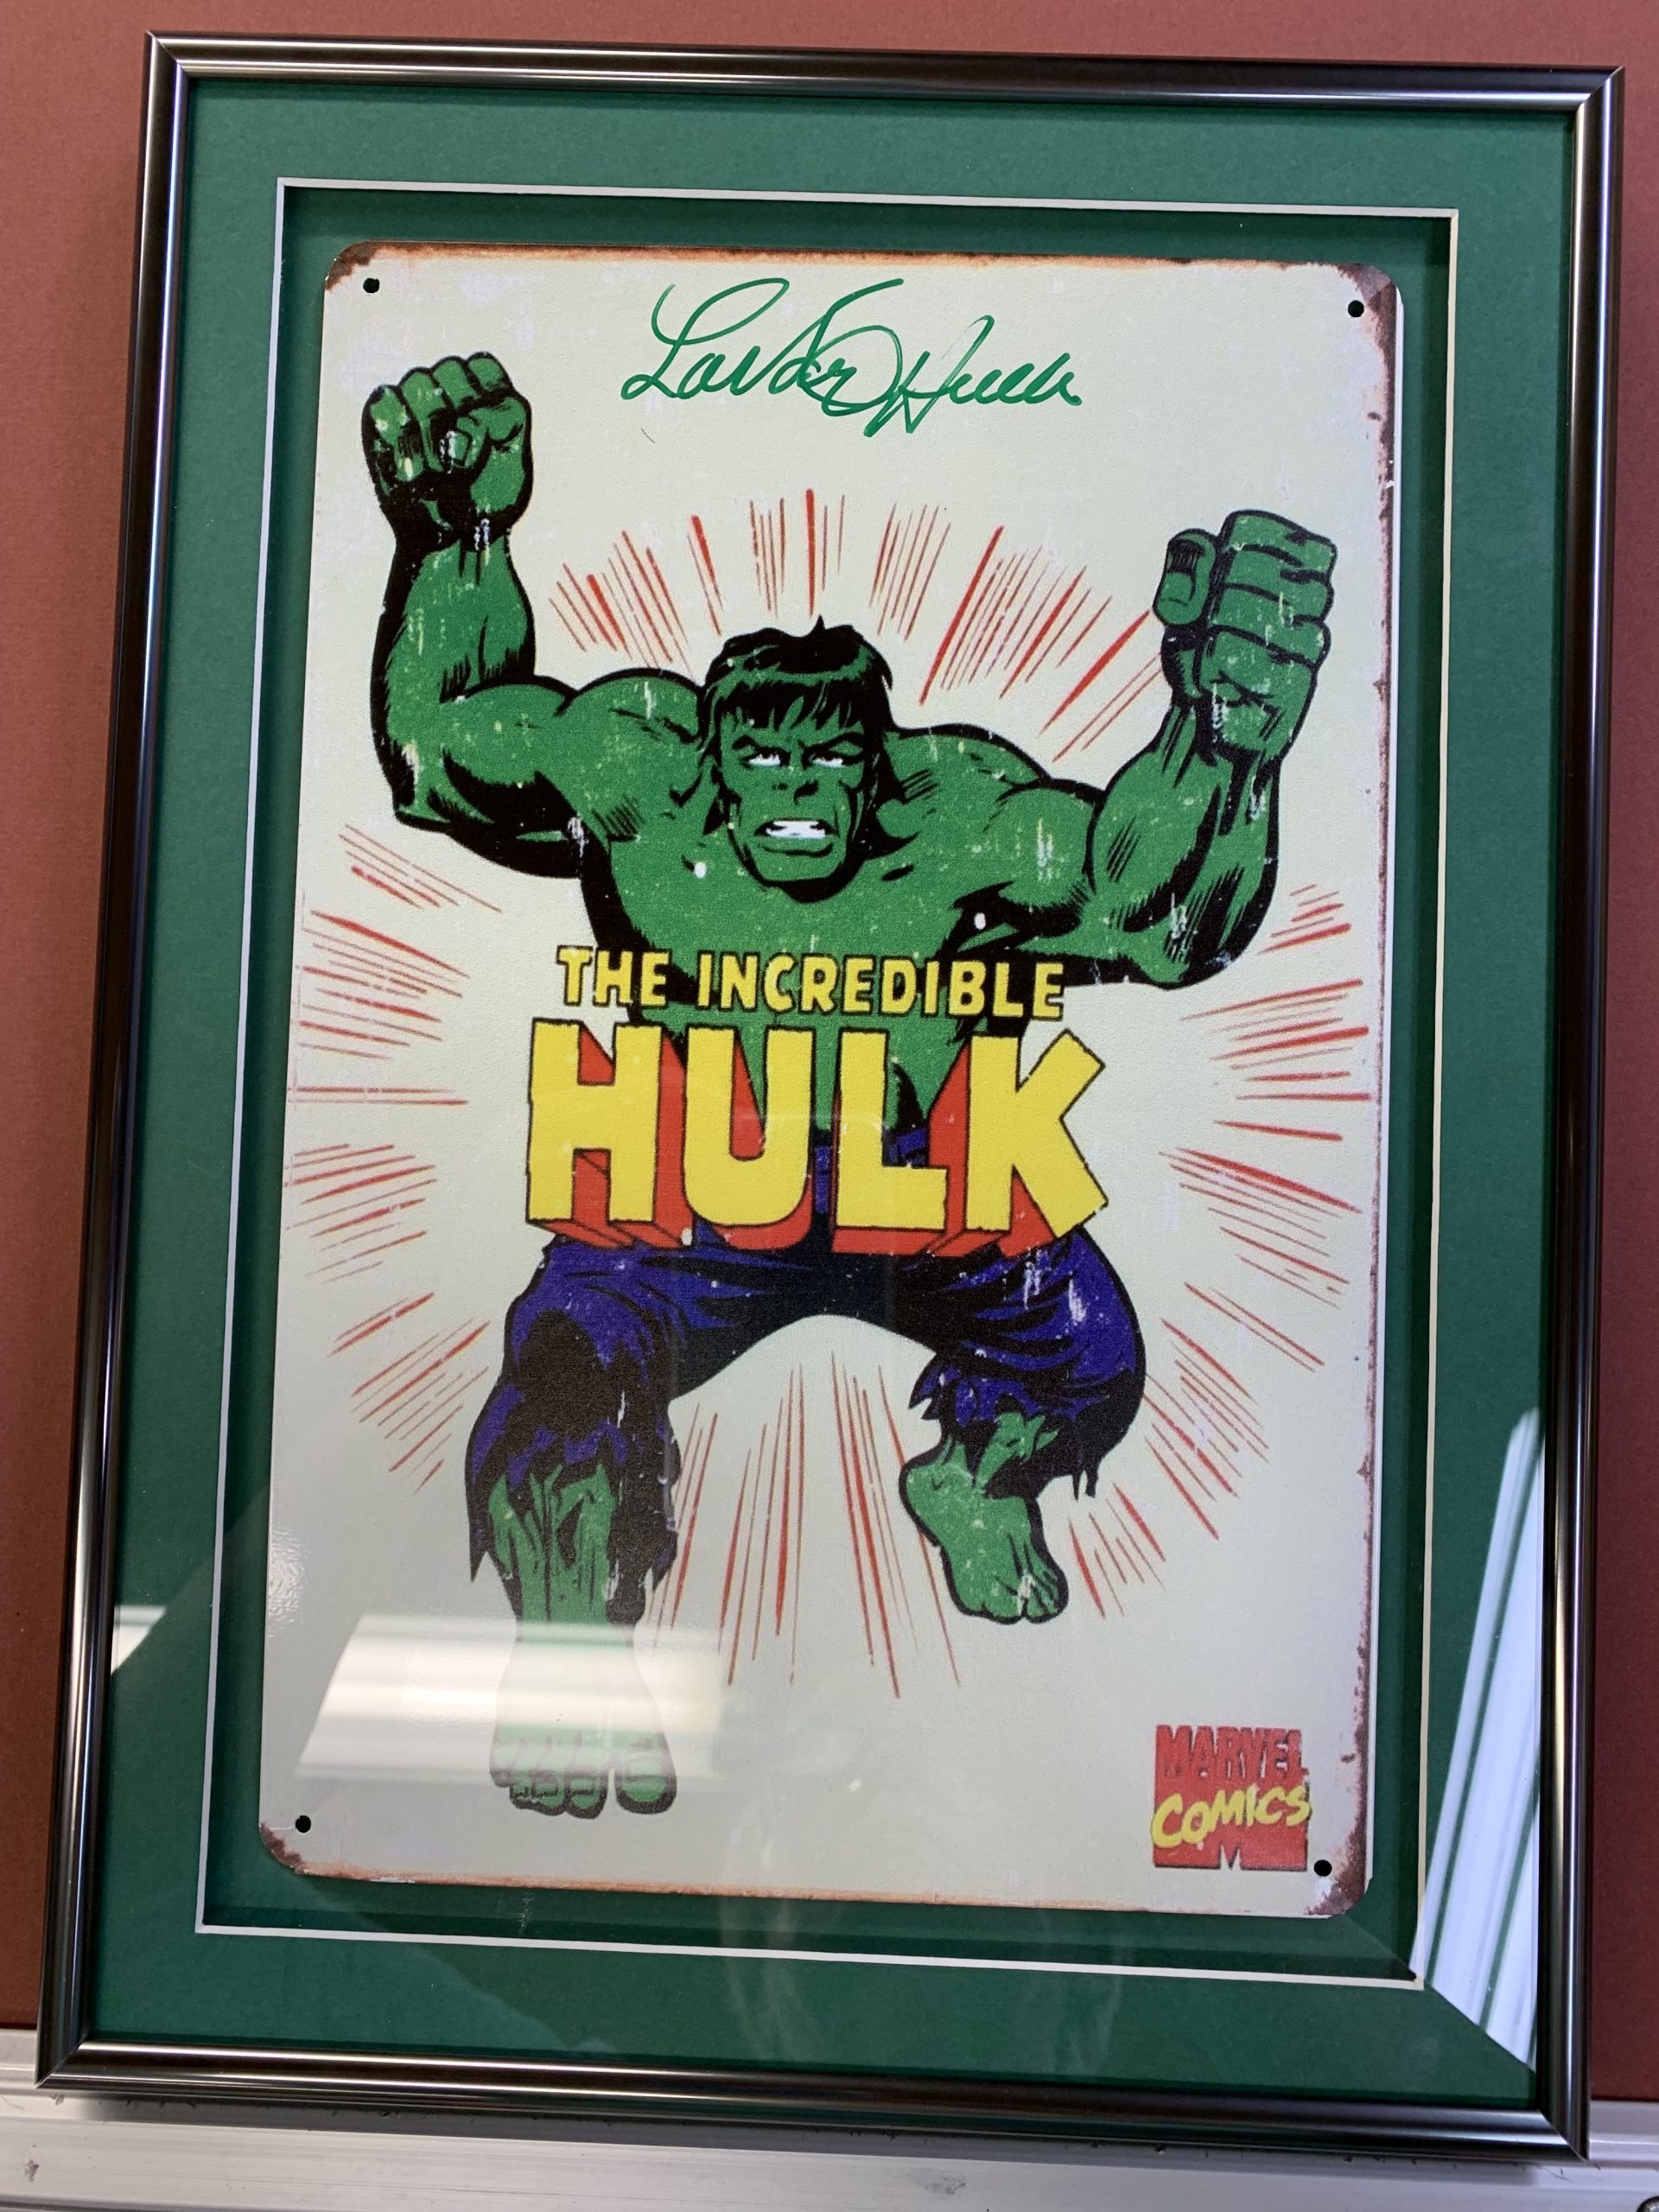 The Incredible Hulk comic